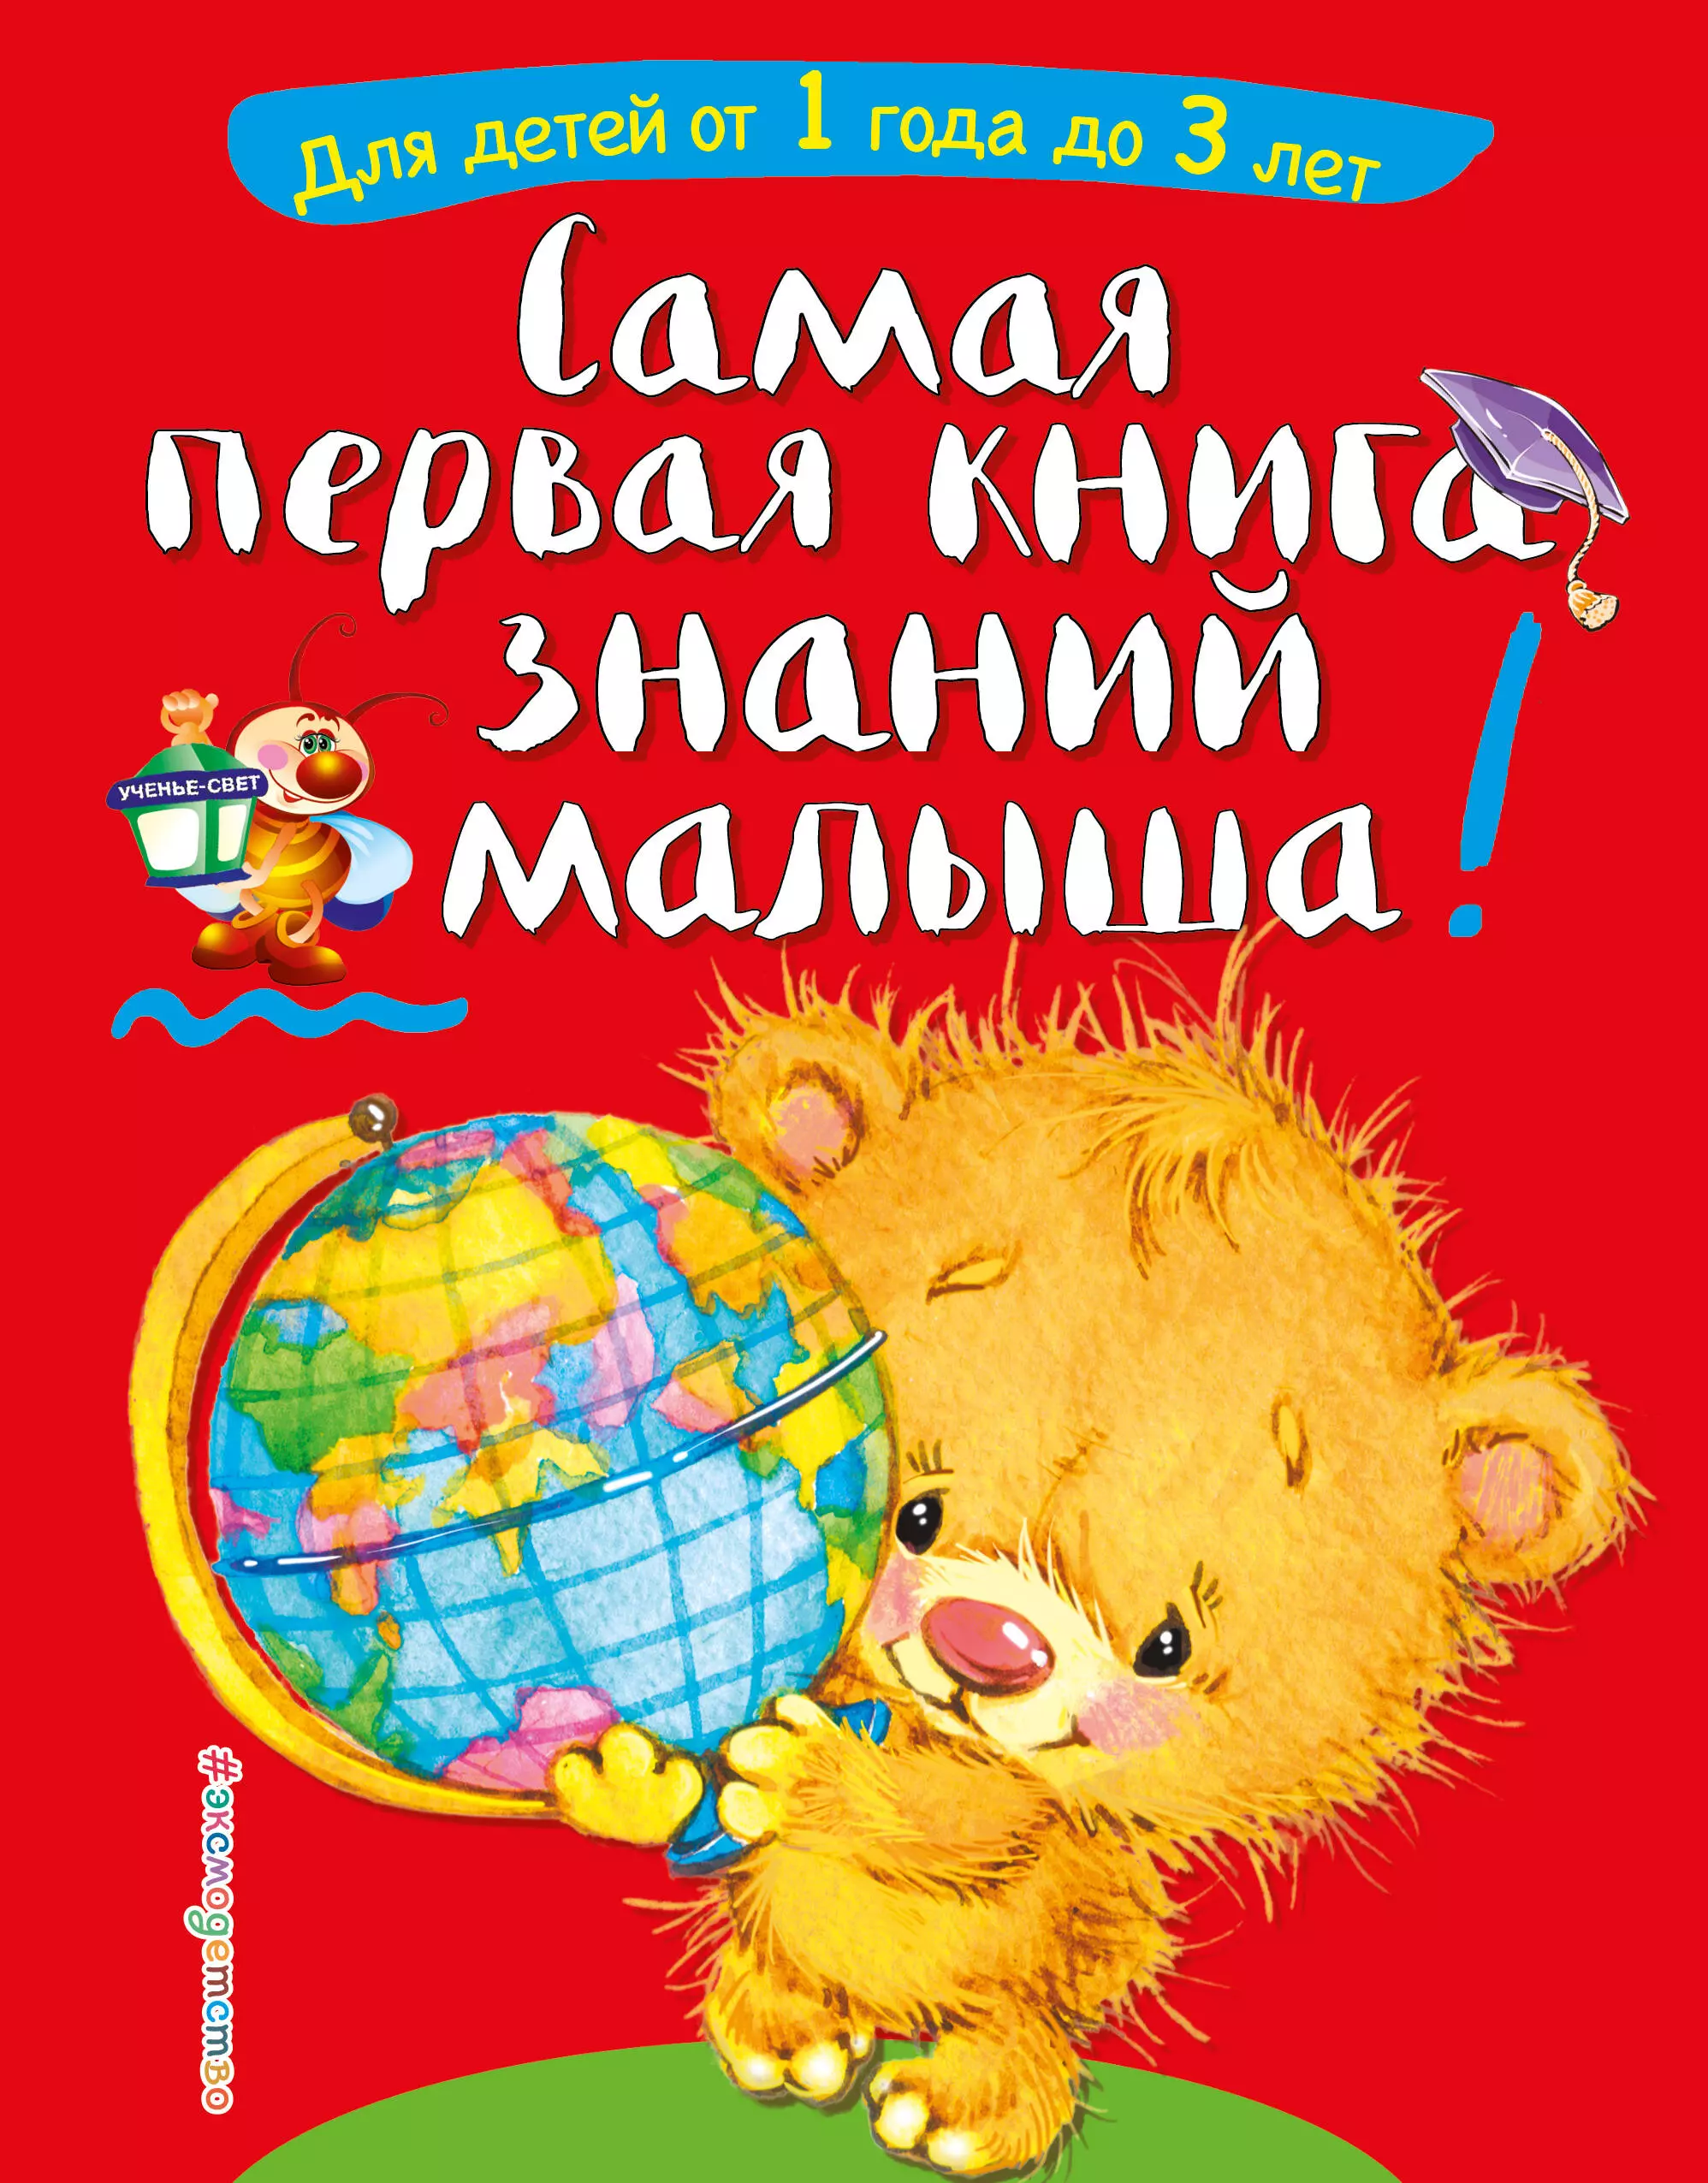 Буланова Софья Александровна - Самая первая книга знаний малыша: для детей от 1 года до 3 лет